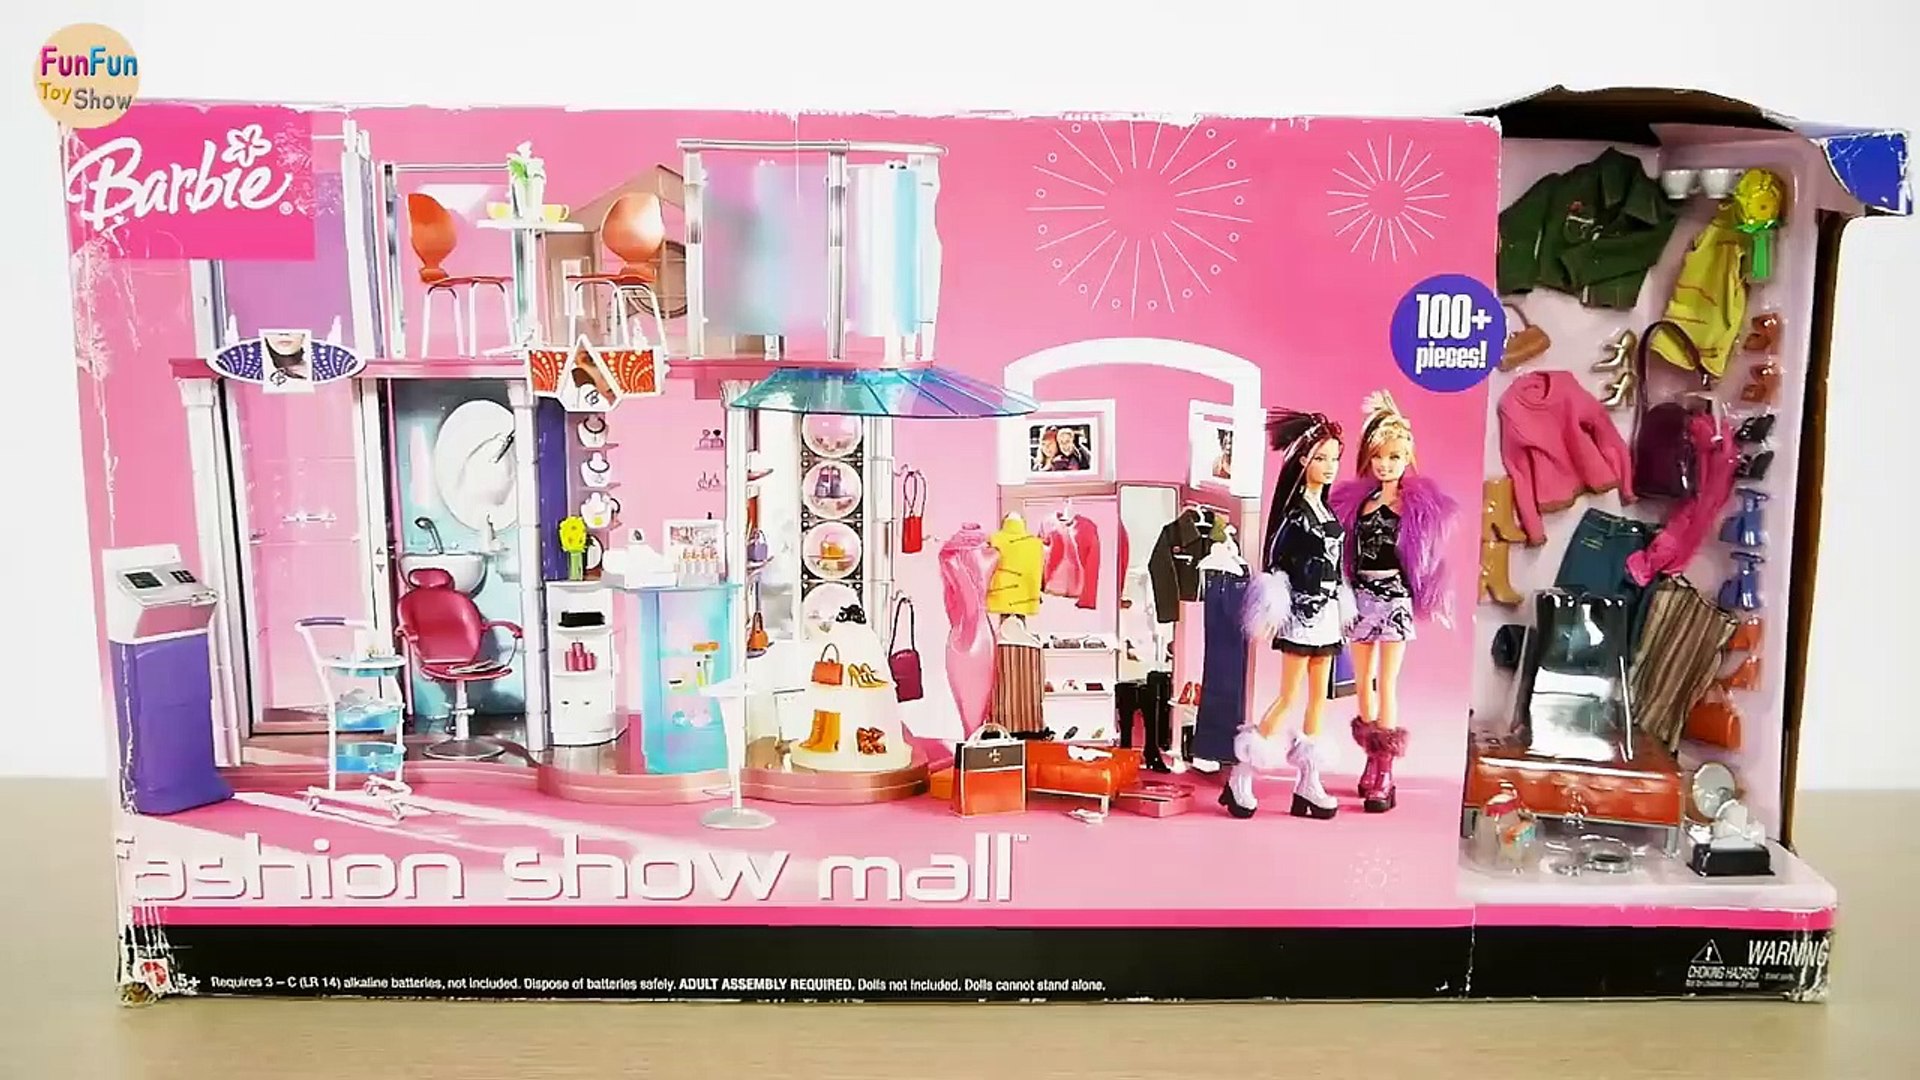 Barbie Fashion Show Mall, Buy Now, Clearance, 54% OFF, www.aem-aem.es